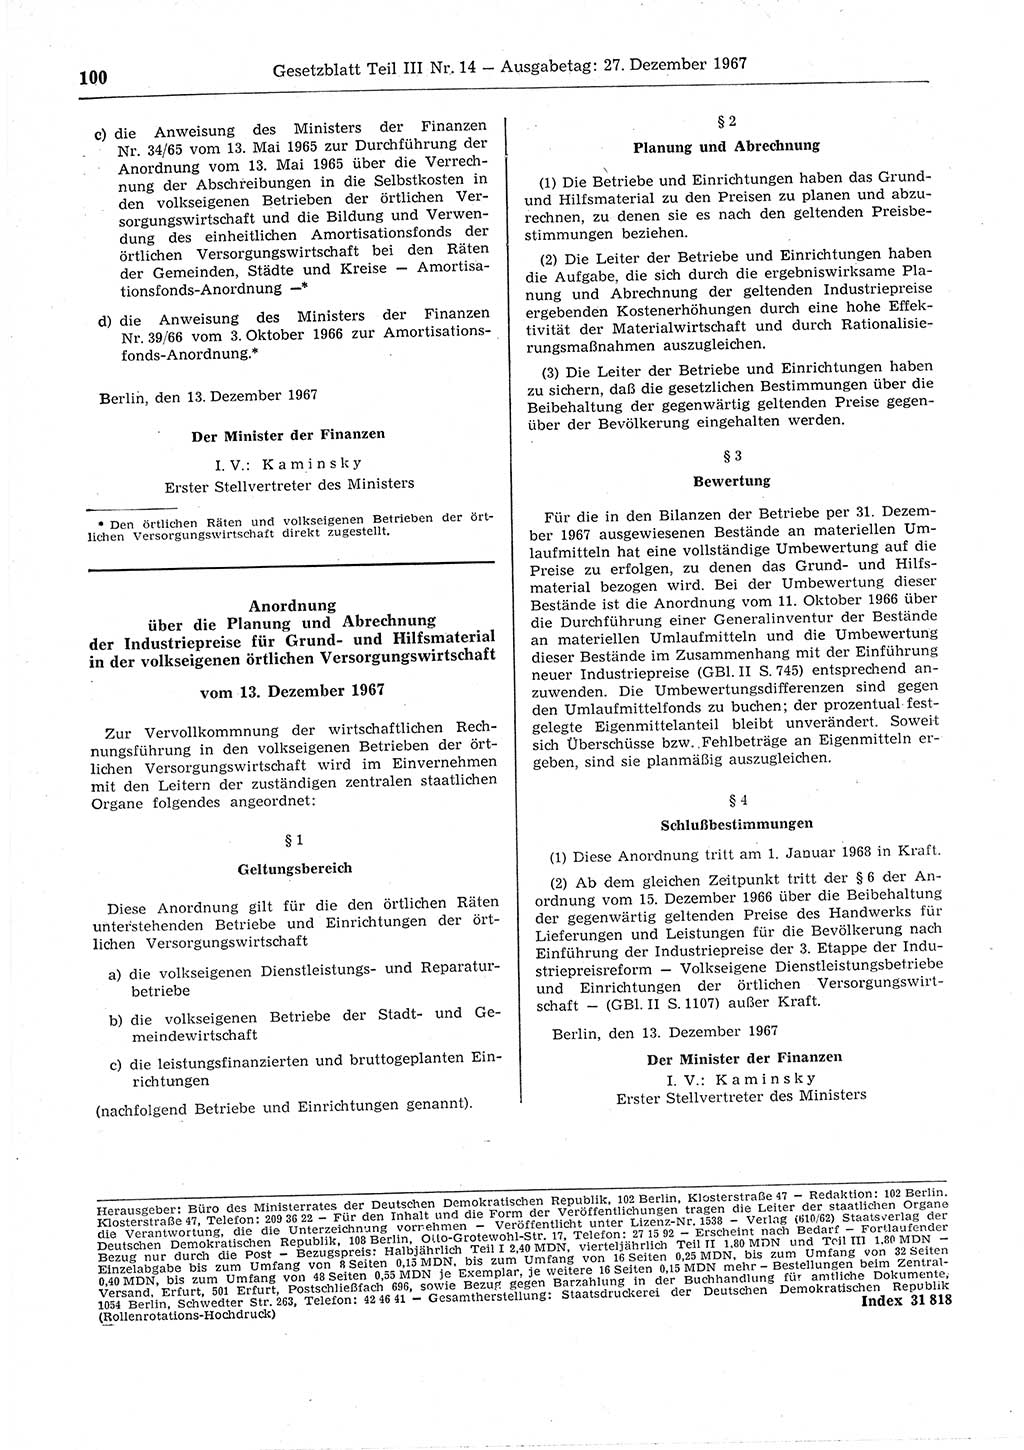 Gesetzblatt (GBl.) der Deutschen Demokratischen Republik (DDR) Teil ⅠⅠⅠ 1967, Seite 100 (GBl. DDR ⅠⅠⅠ 1967, S. 100)